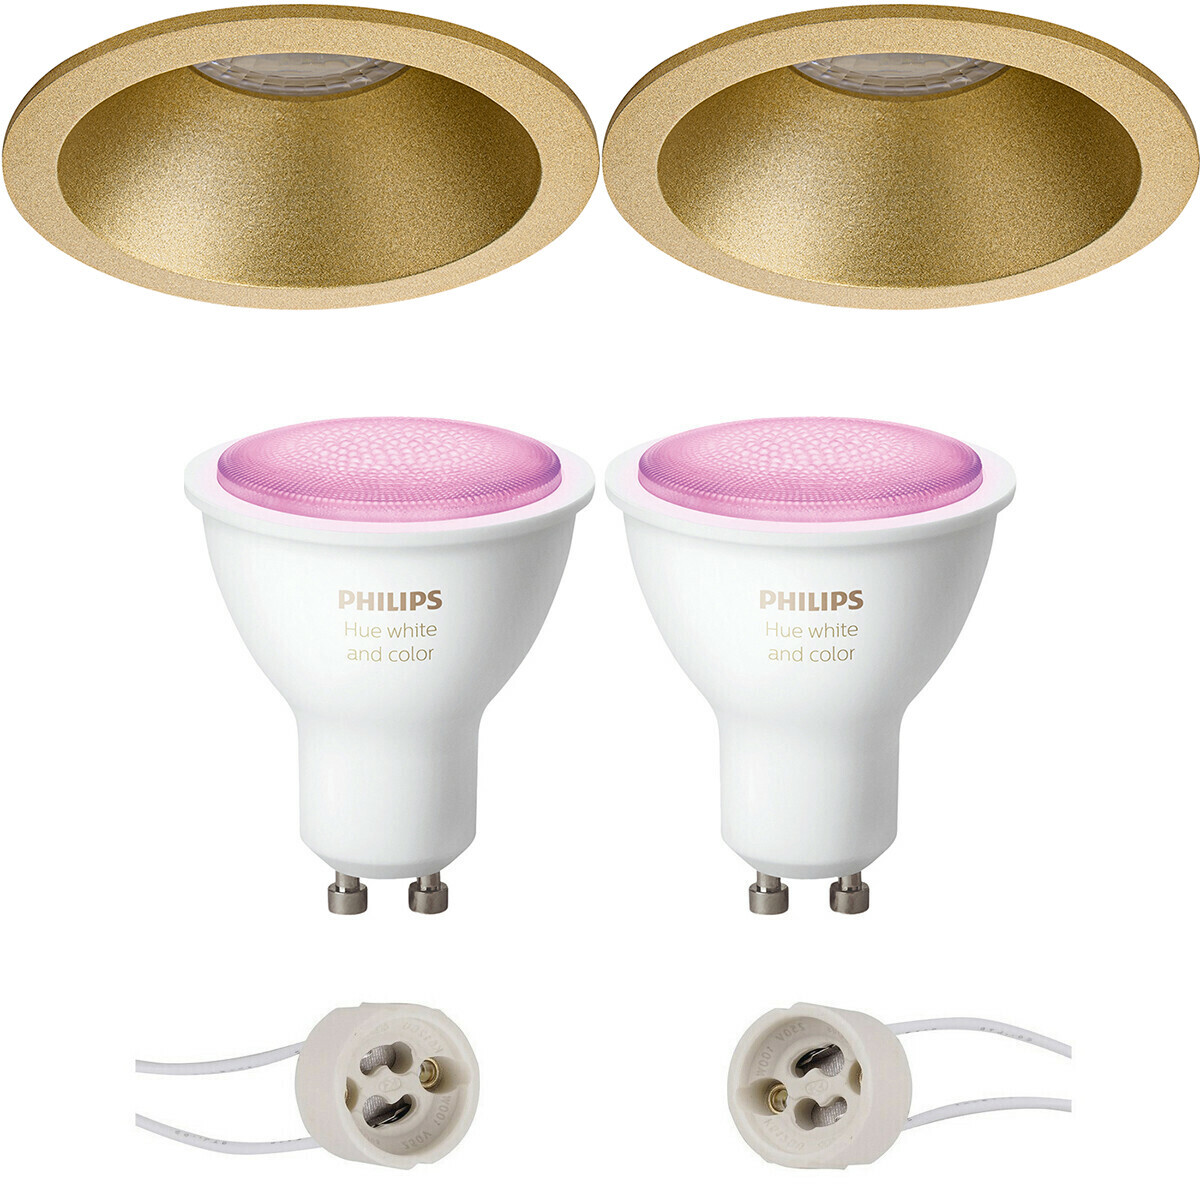 BES LED Pragmi Pollon Pro - Inbouw Rond - Mat Goud - Verdiept - Ø82mm - Philips Hue - LED Spot Set GU10 - White and Color Ambiance - Bluetooth